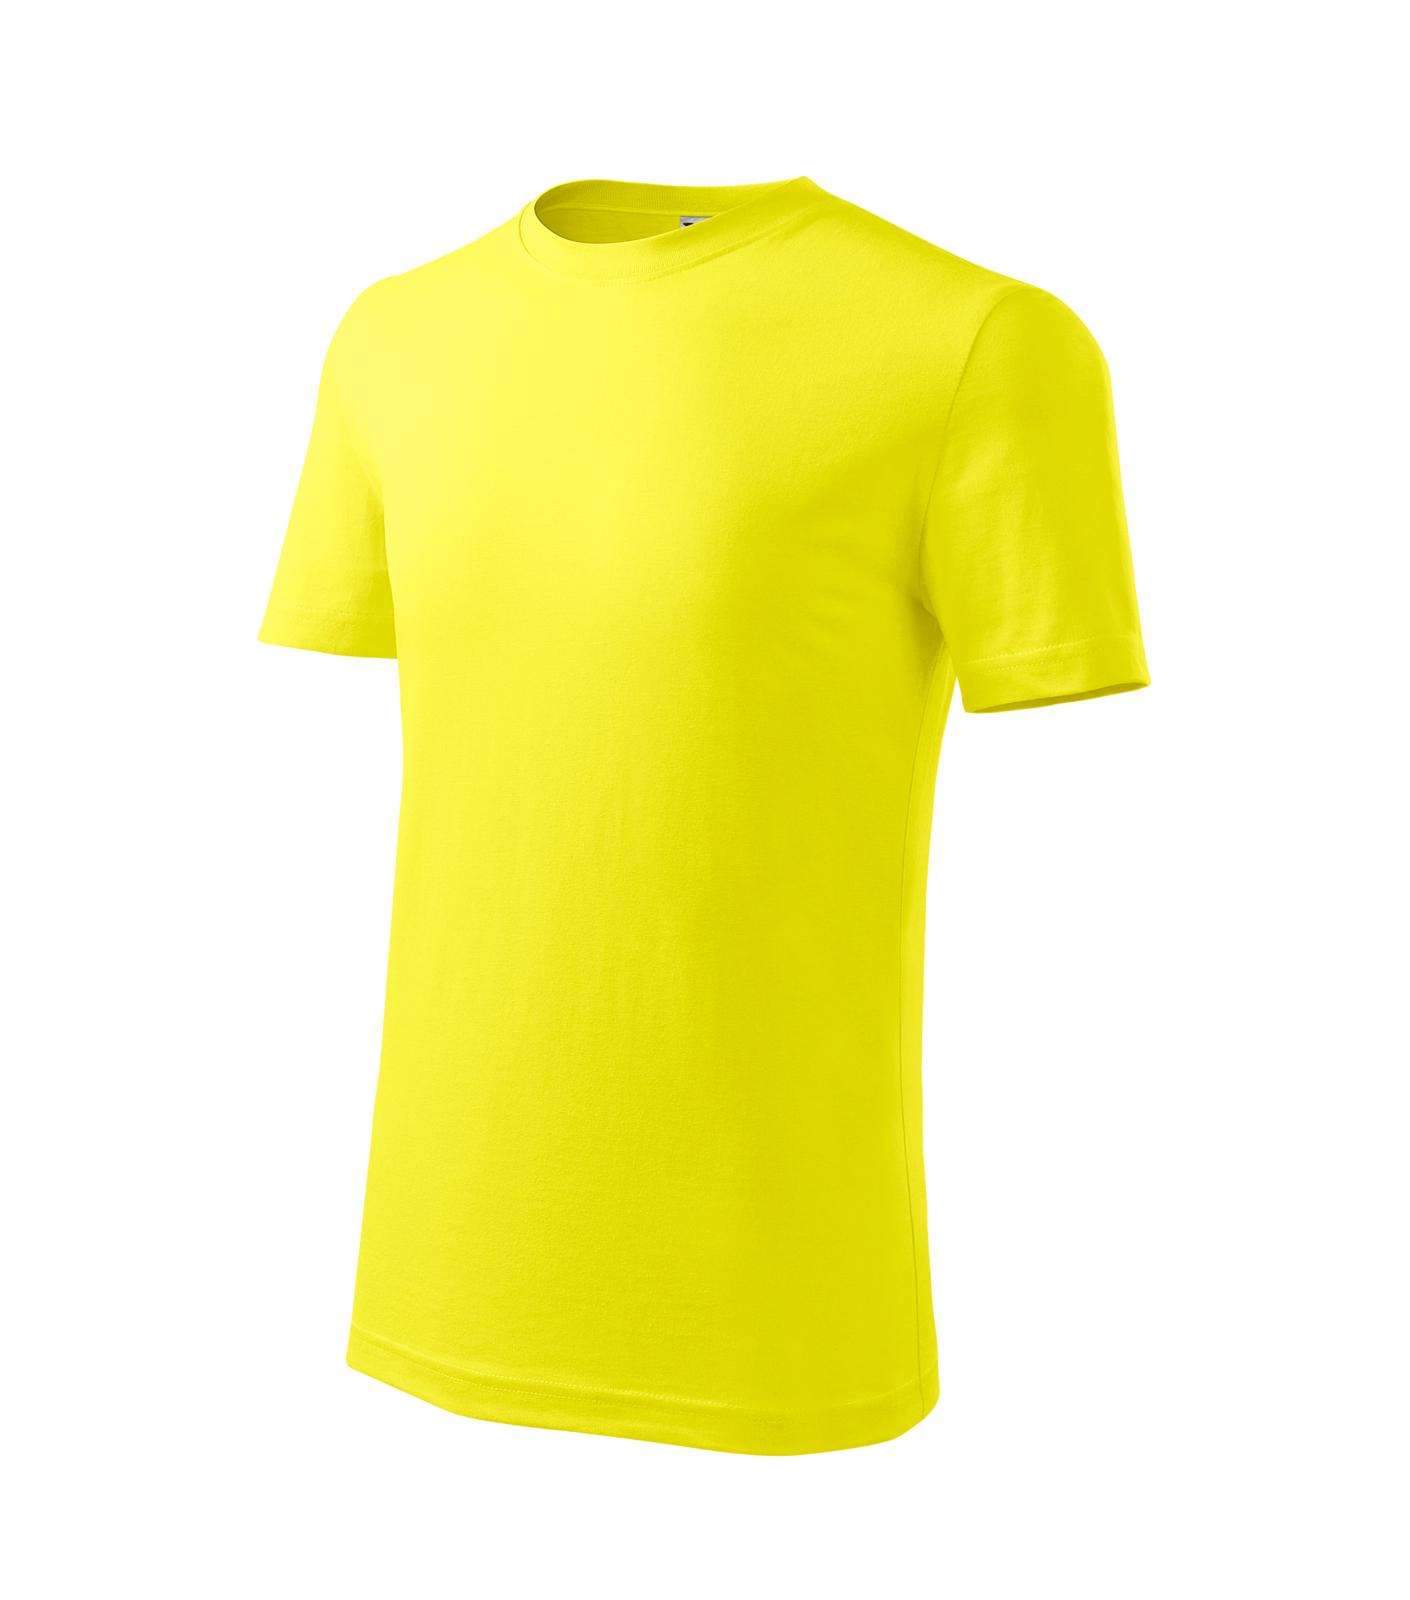 Classic New Tričko dětské Barva: citronová, Velikost: 110 cm/4 roky